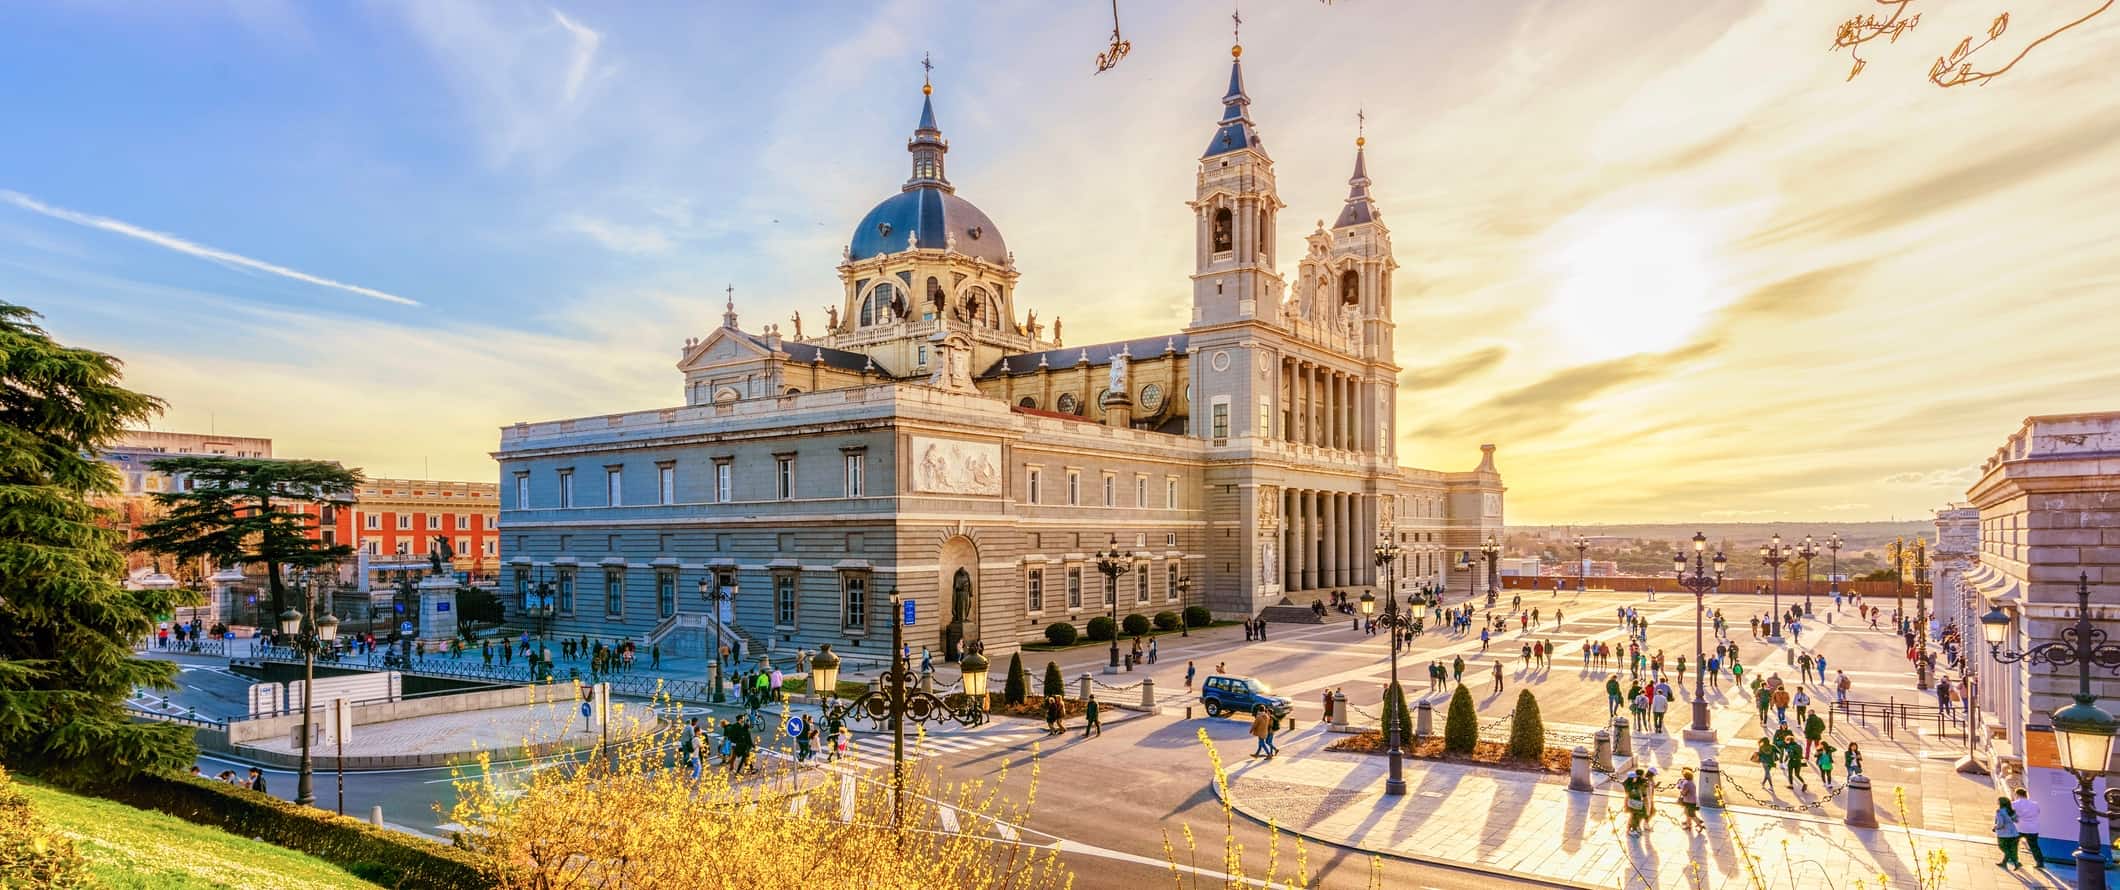 A incrível arquitetura histórica de Madri, Espanha, ao lado da grande área durante o pôr do sol.